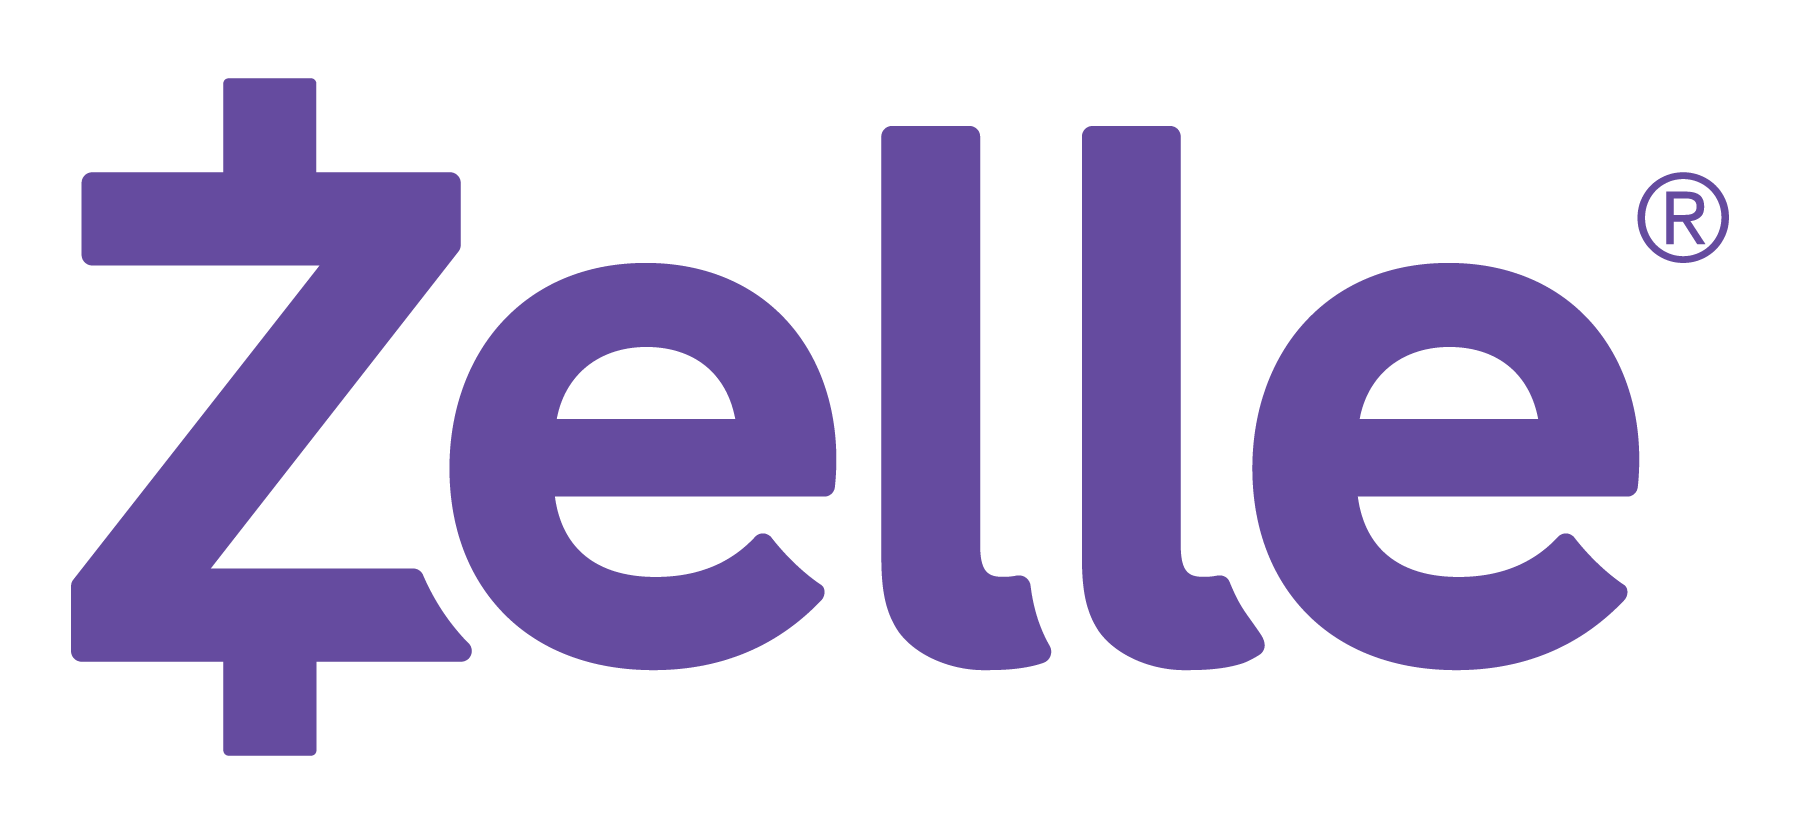 Zelle logo in purple